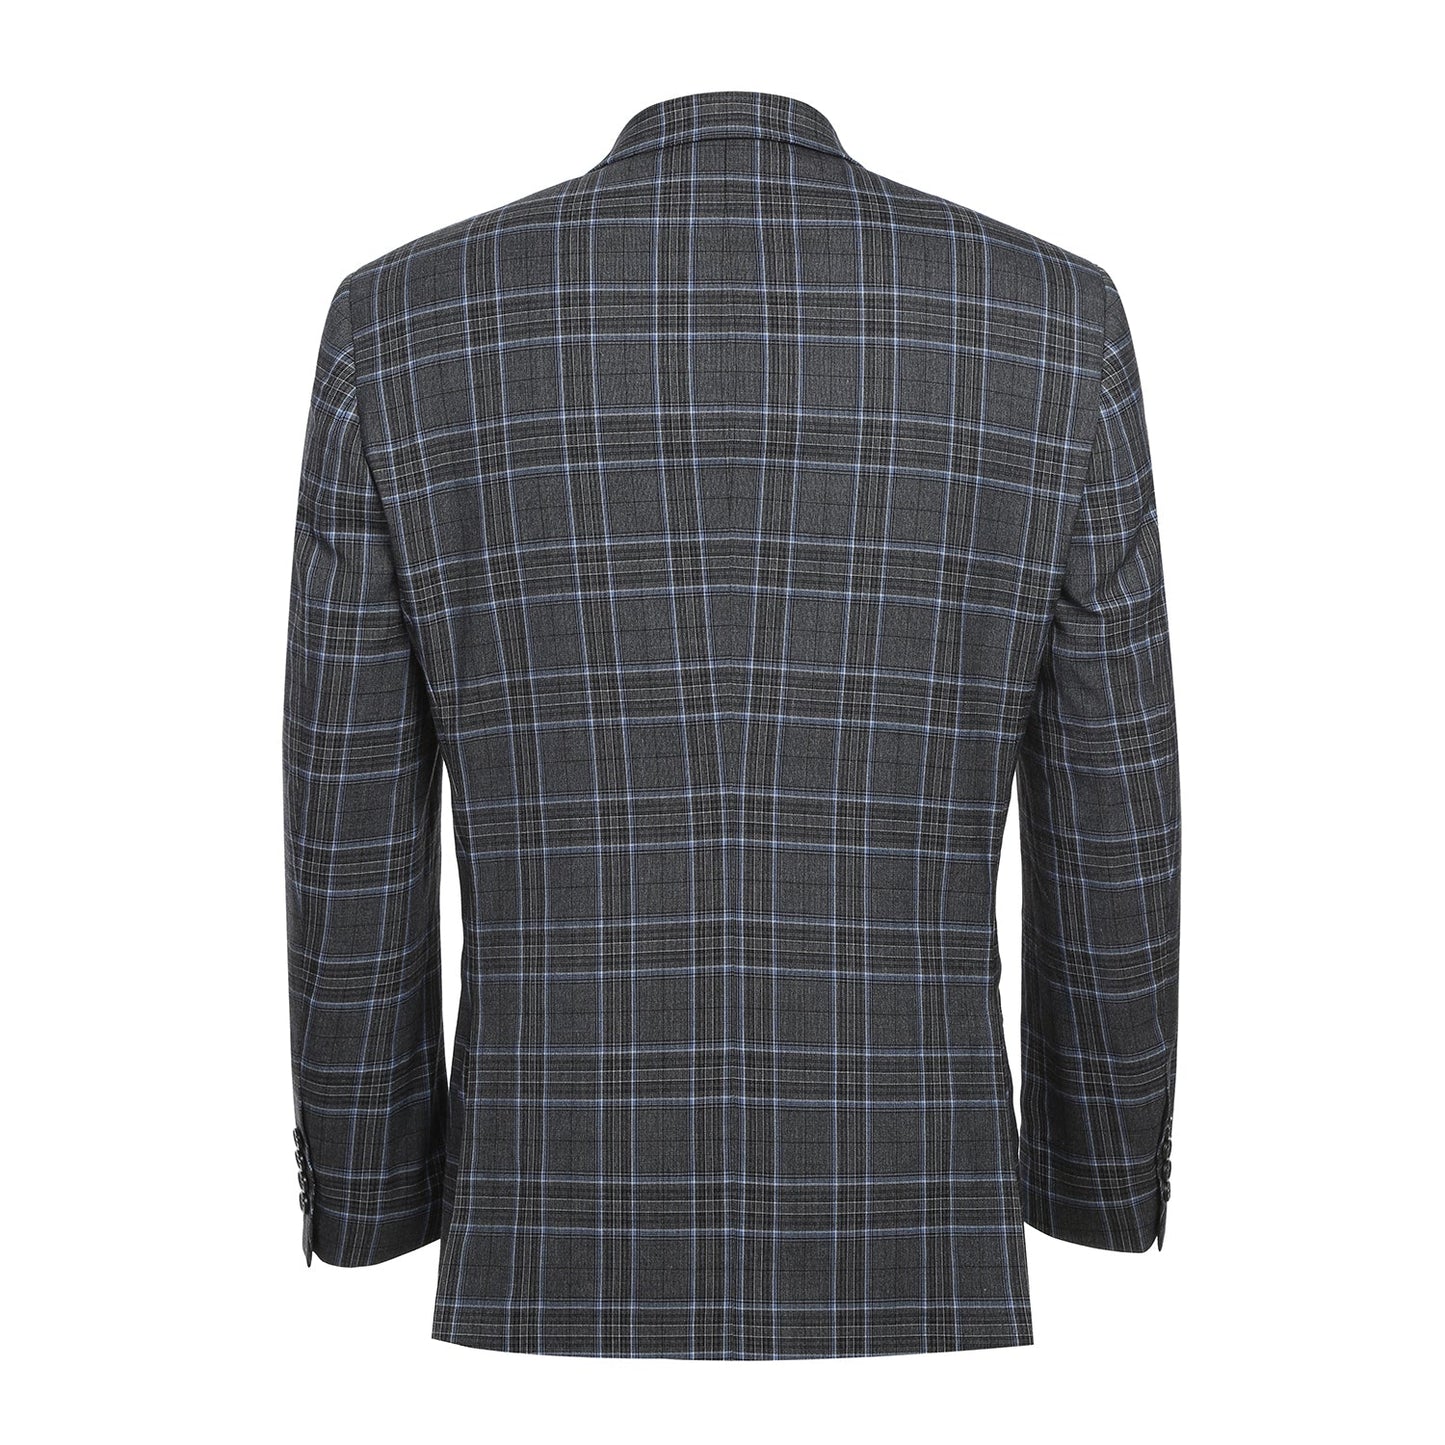 293-28 Men's Slim Fit Grey Plaid Suit